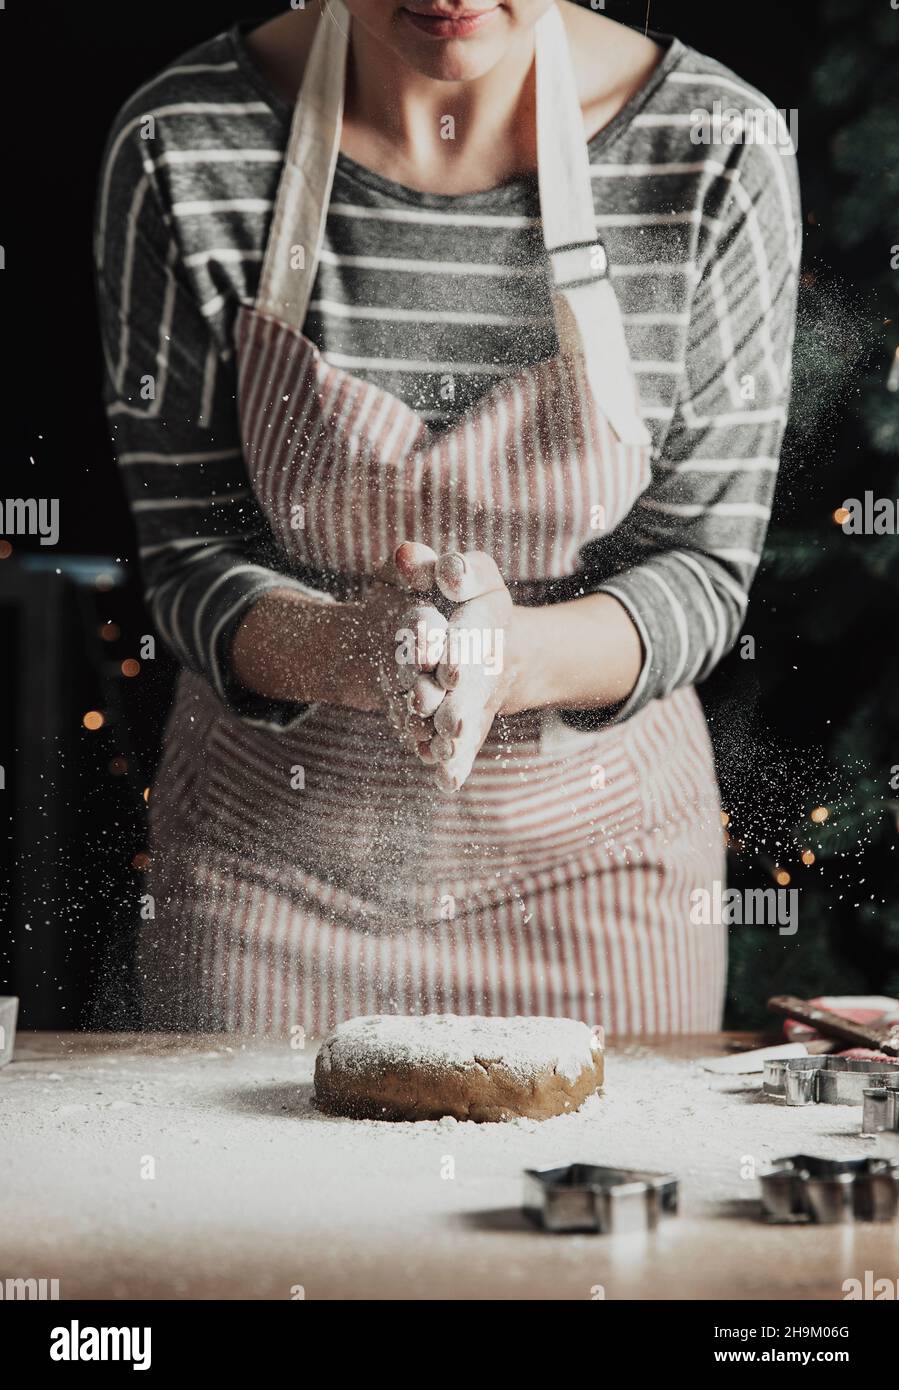 Frohe Weihnachten, Frohes neues Jahr. Lebkuchenkochen, Kuchen, Strudelbacken. Die Frau im Vorfeld bereitet Kekse vor. Handflächen schlagen, Mehl über den kneteten Teig spritzen. Junges Mädchen vorbereiten, backen, kochen Stockfoto